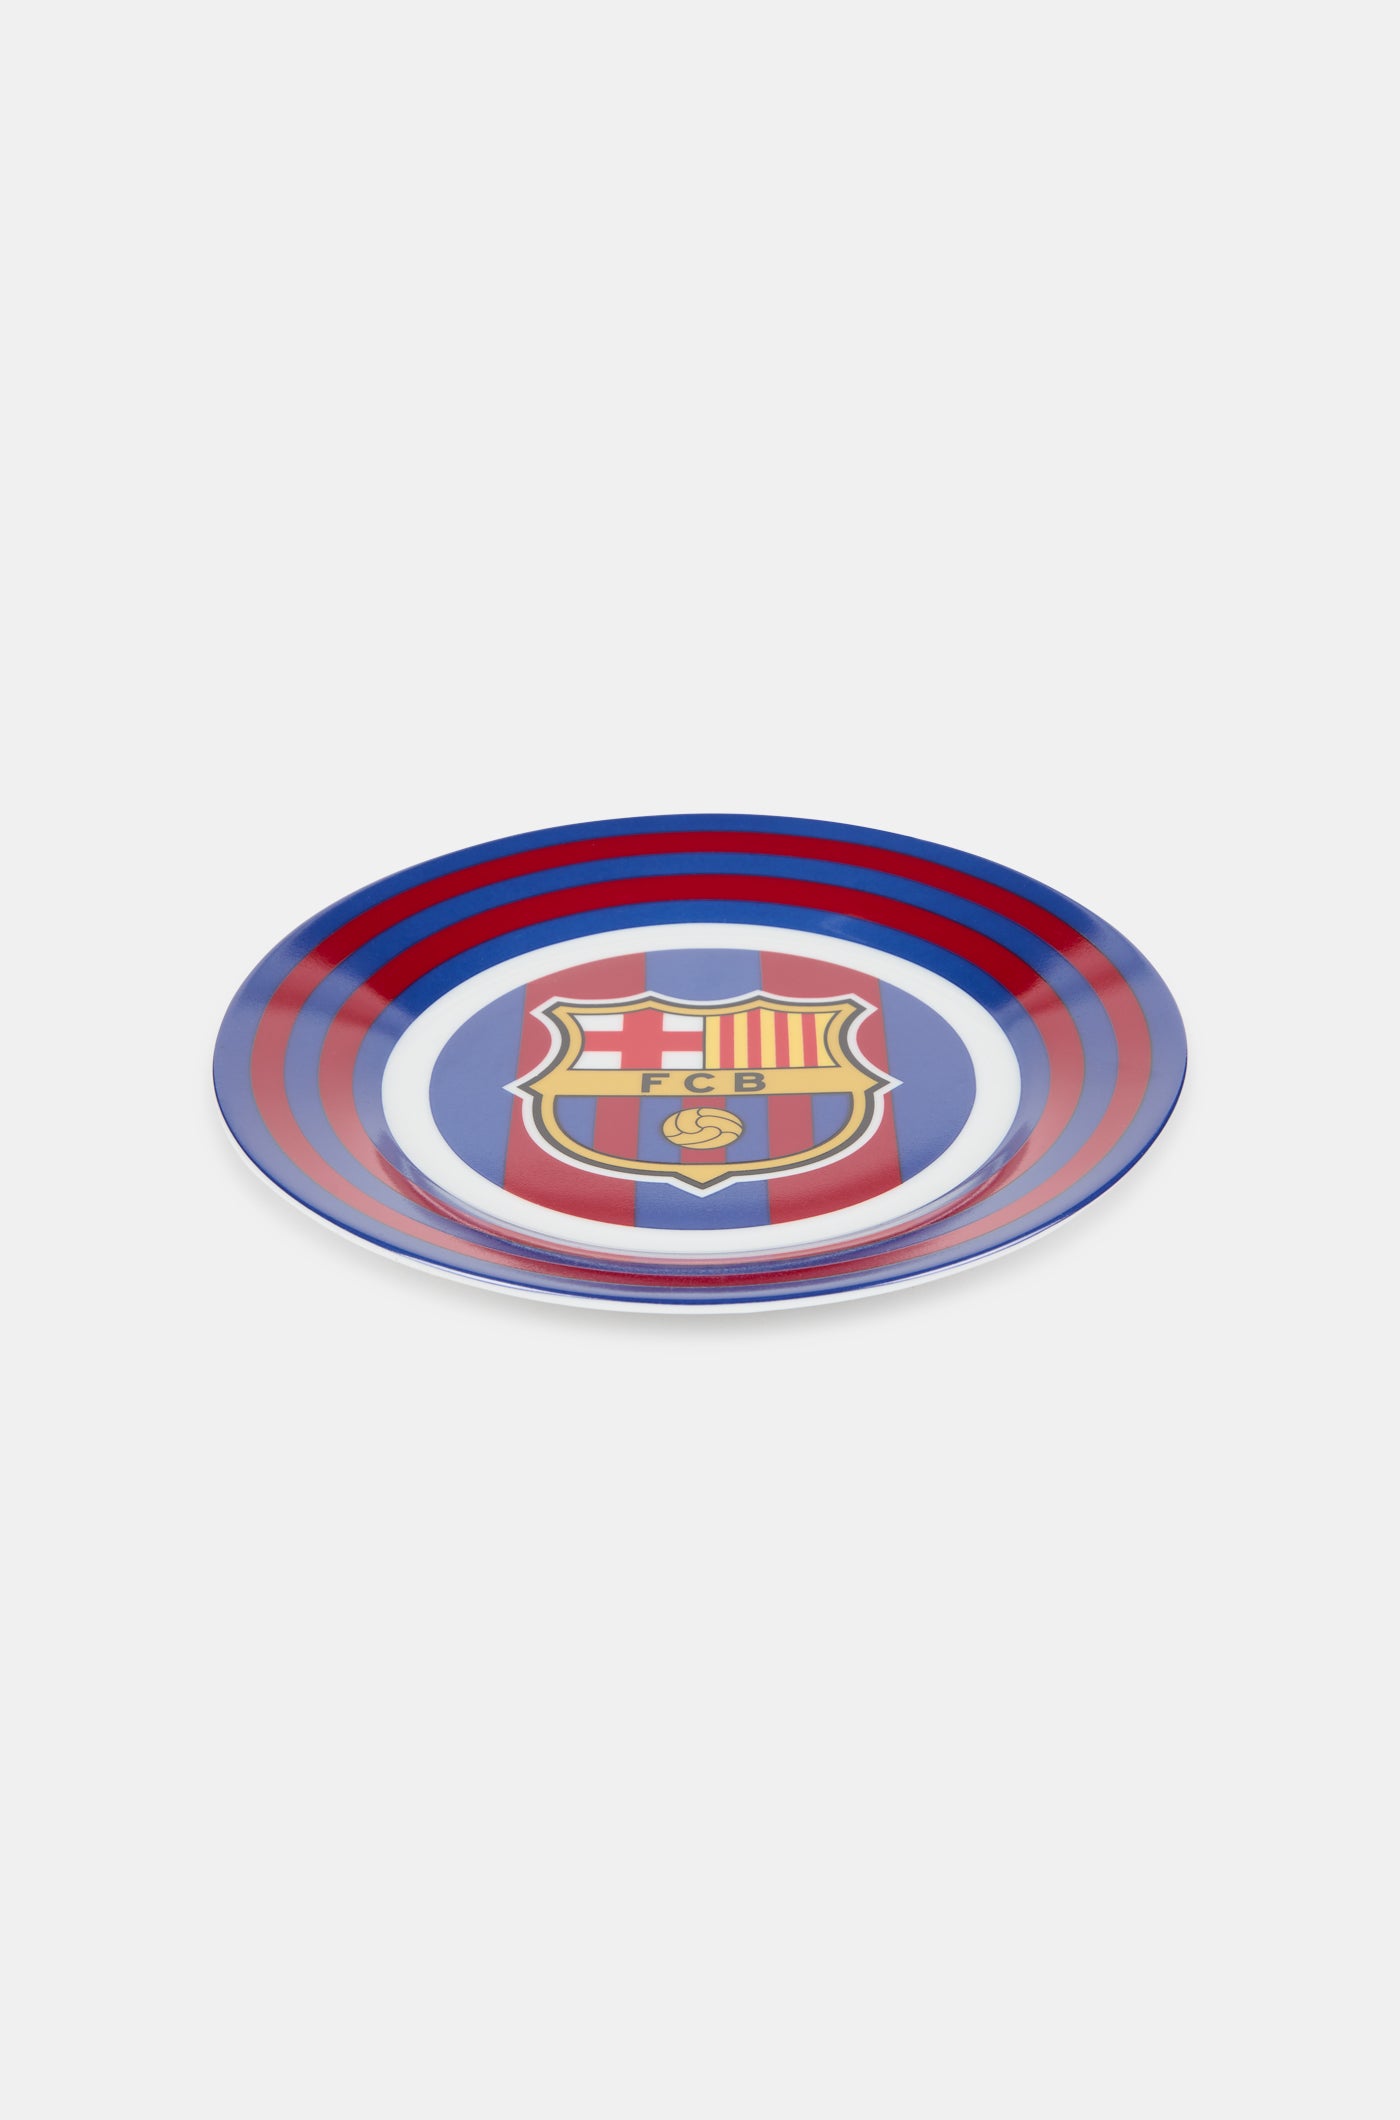 Set de desayuno para bebé del FC Barcelona